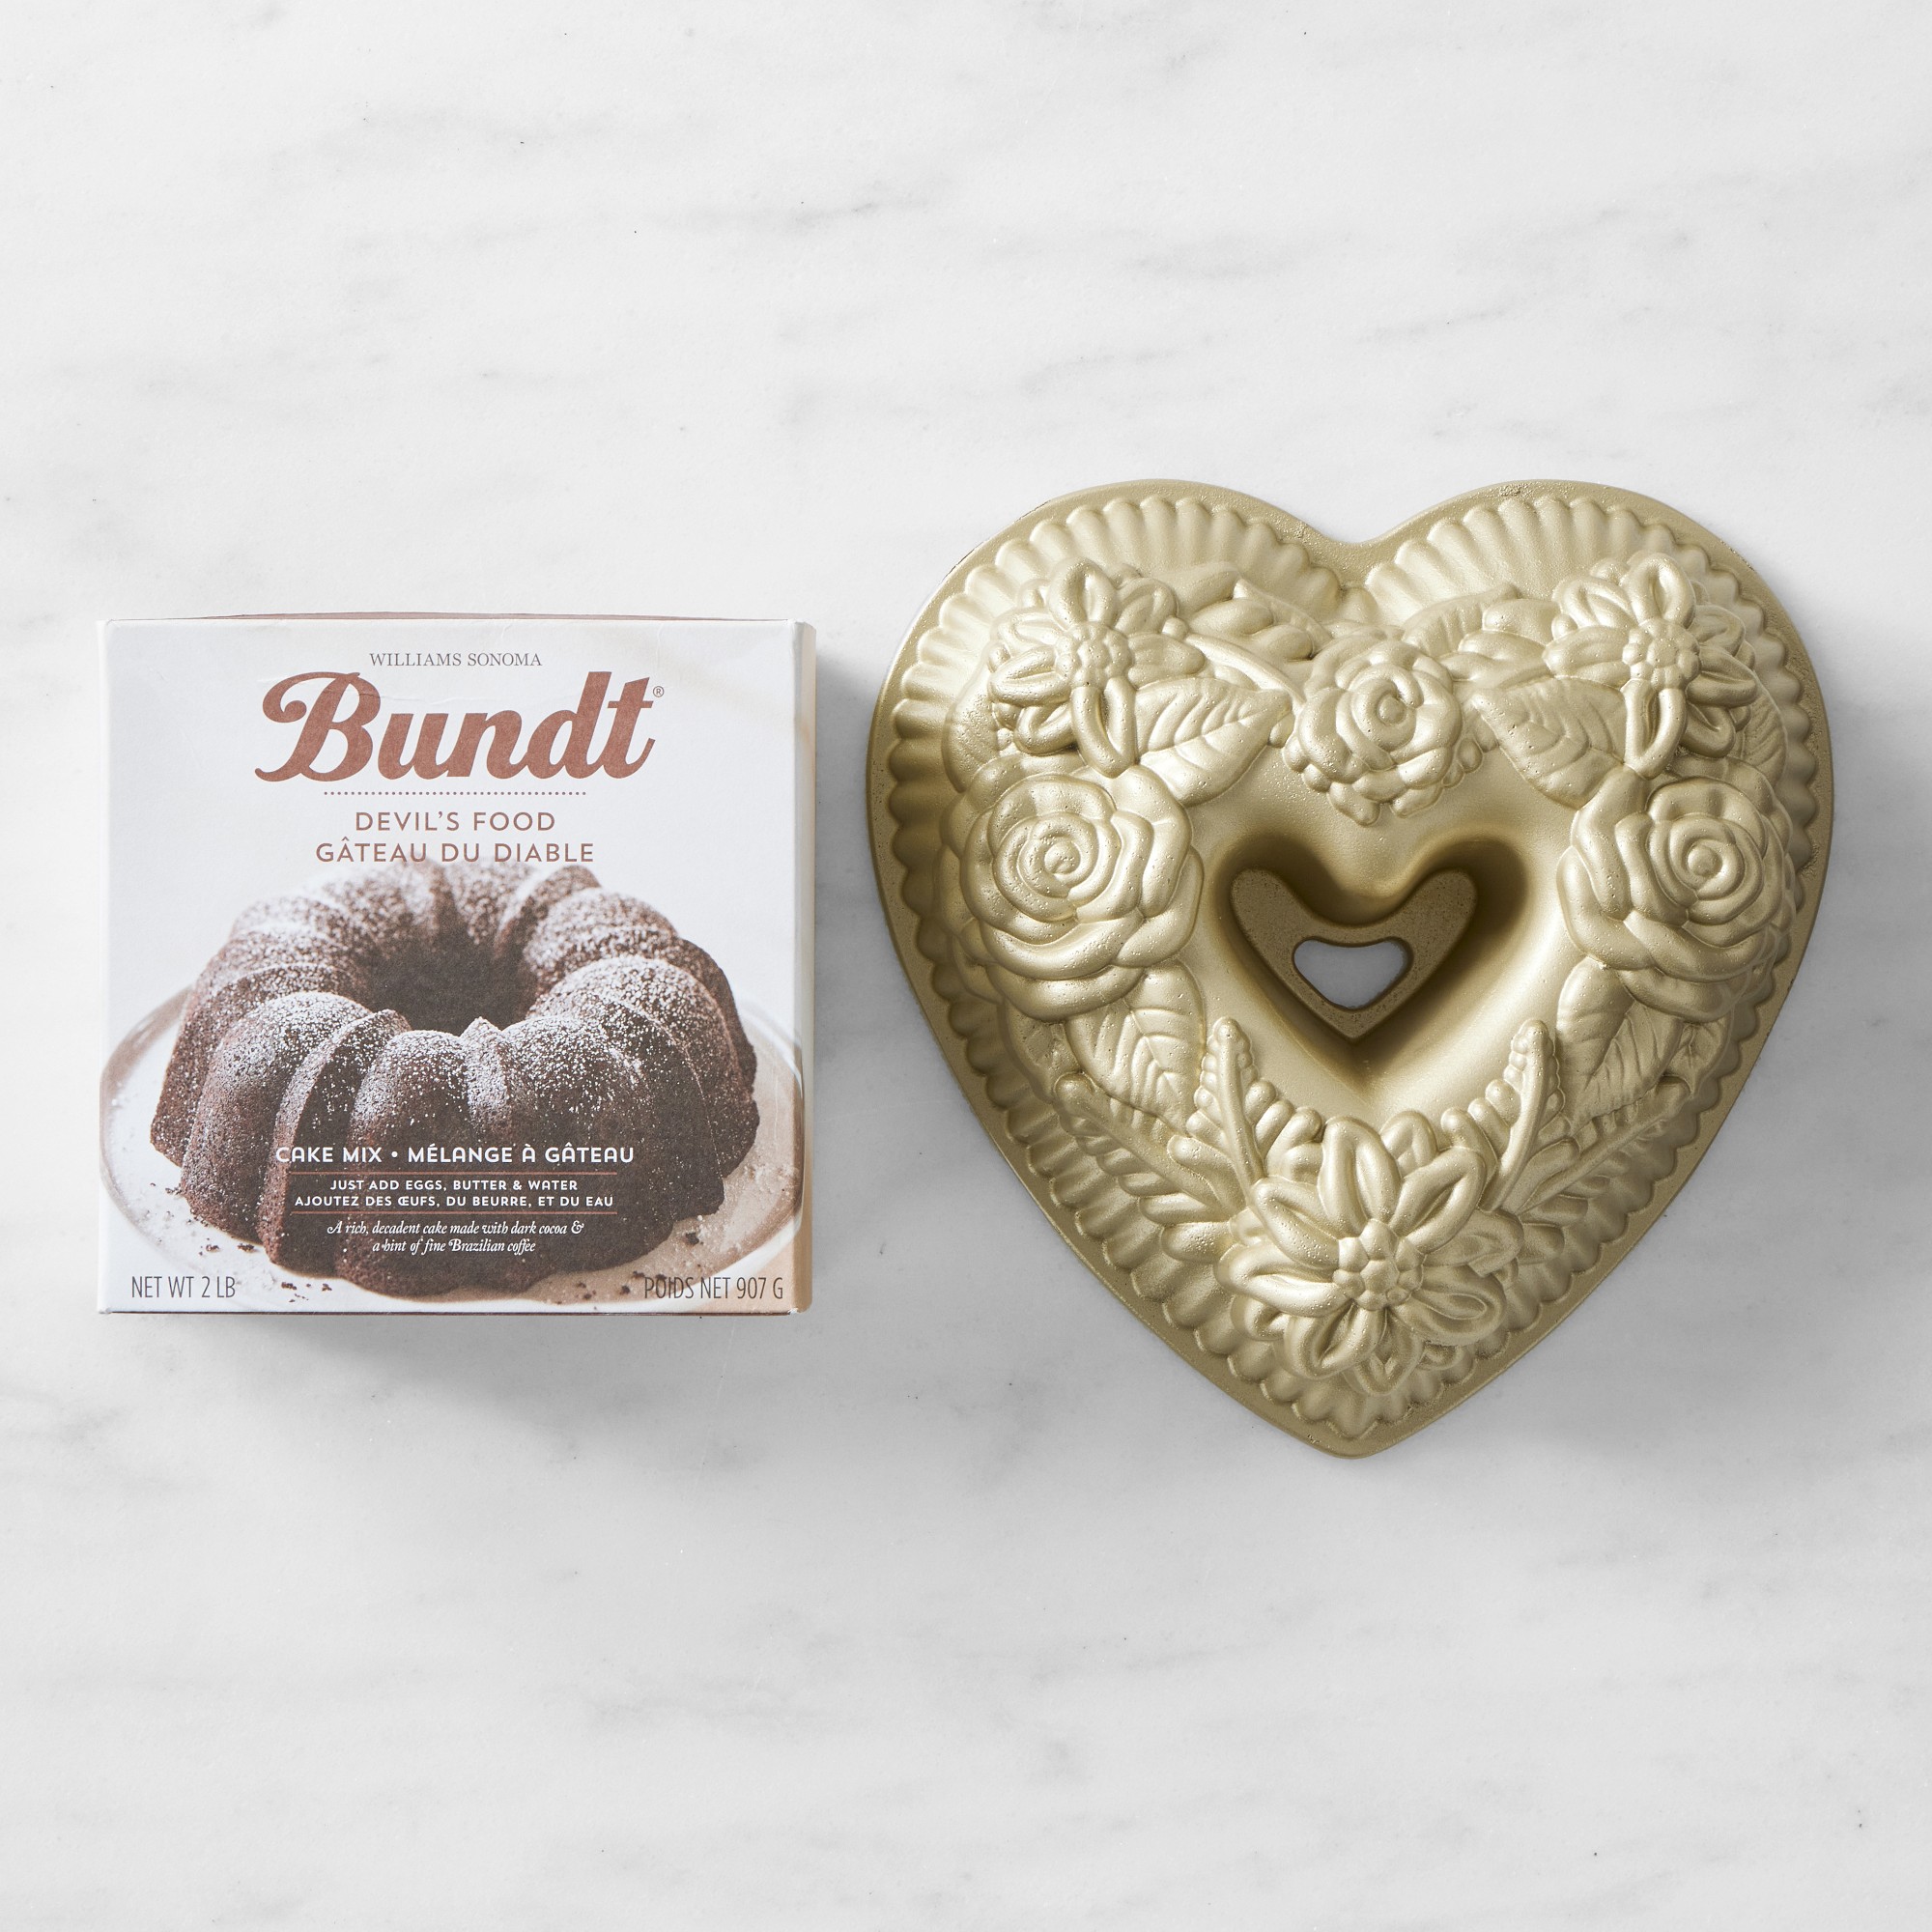 Nordic Ware Floral Heart Bundt Pan & Devils Food Bundt Cake Mix